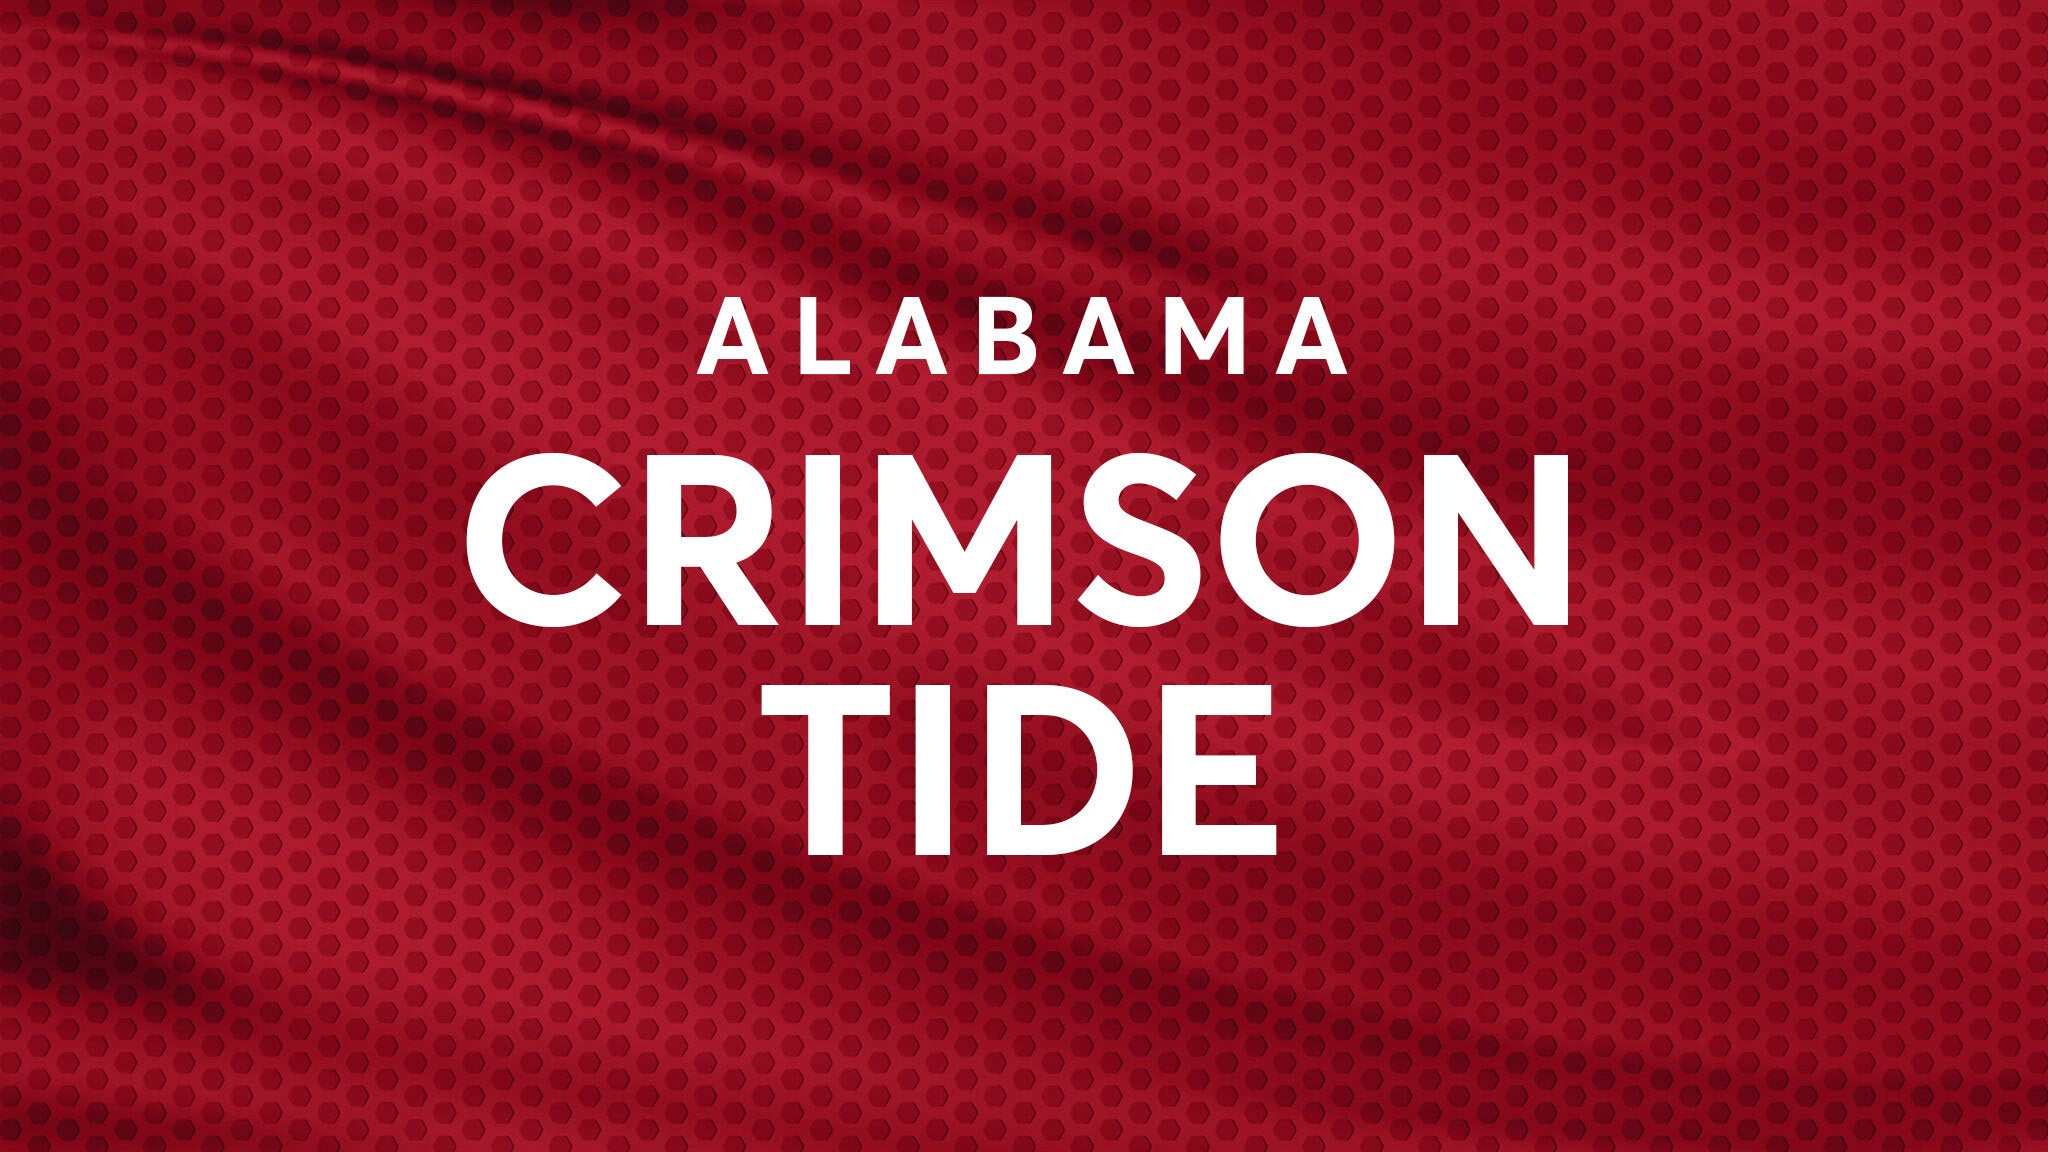 Alabama Crimson Tide Baseball vs. Samford Bulldogs Baseball